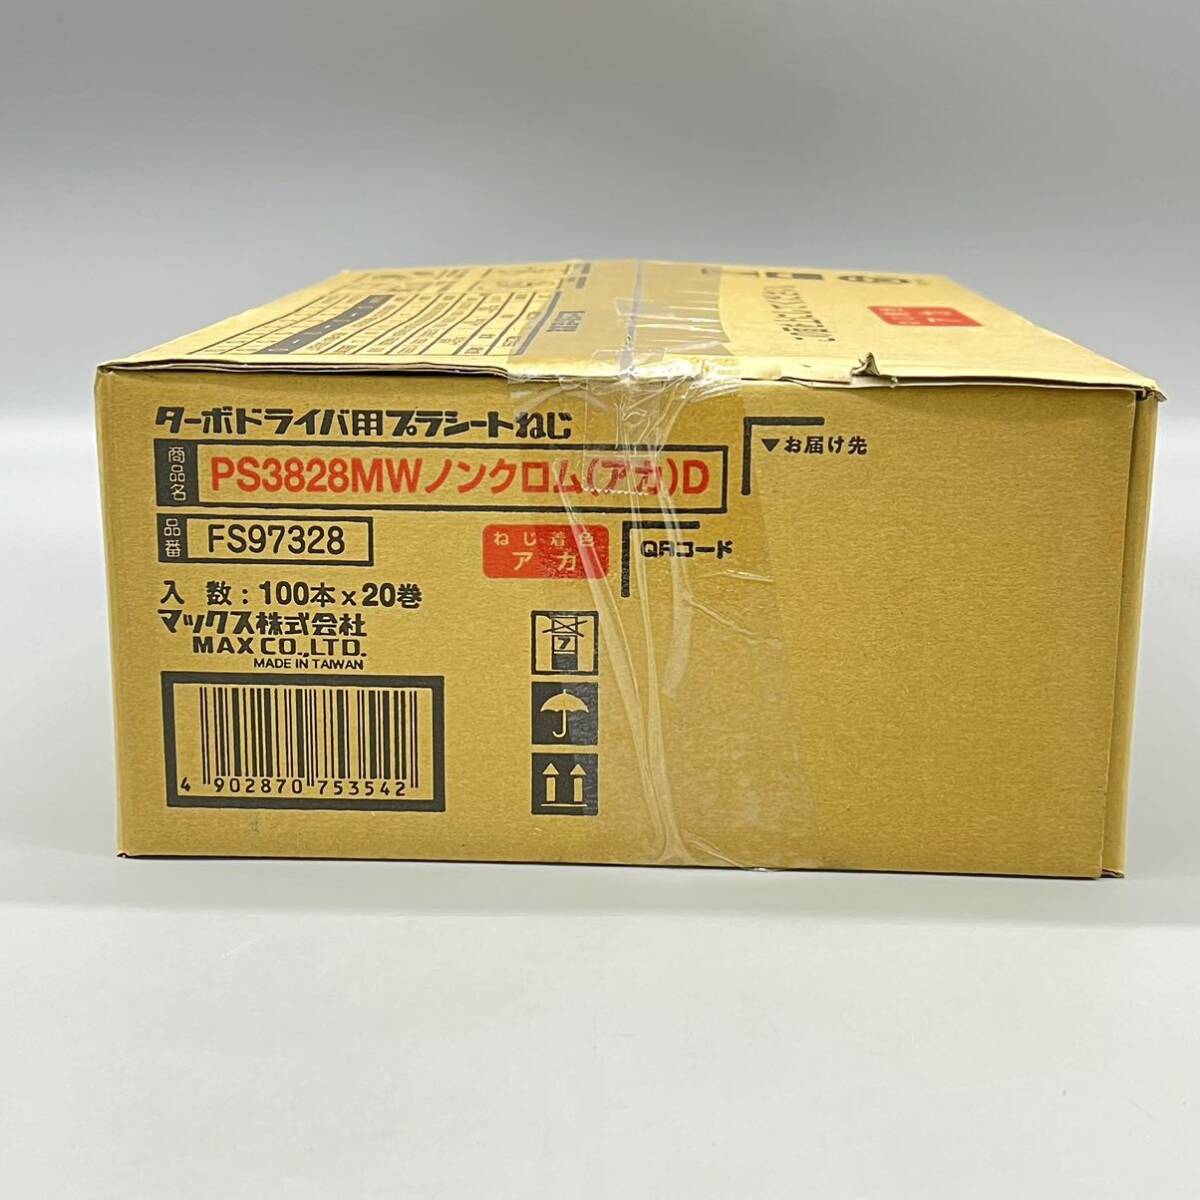 【未使用品】MAX マックス PS3828MWノンクロム(アカ)D 28ミリ×3.8ミリ 100本×20巻×1箱 2000本入り ターボドライバ用プラシートねじ 軸組の画像3